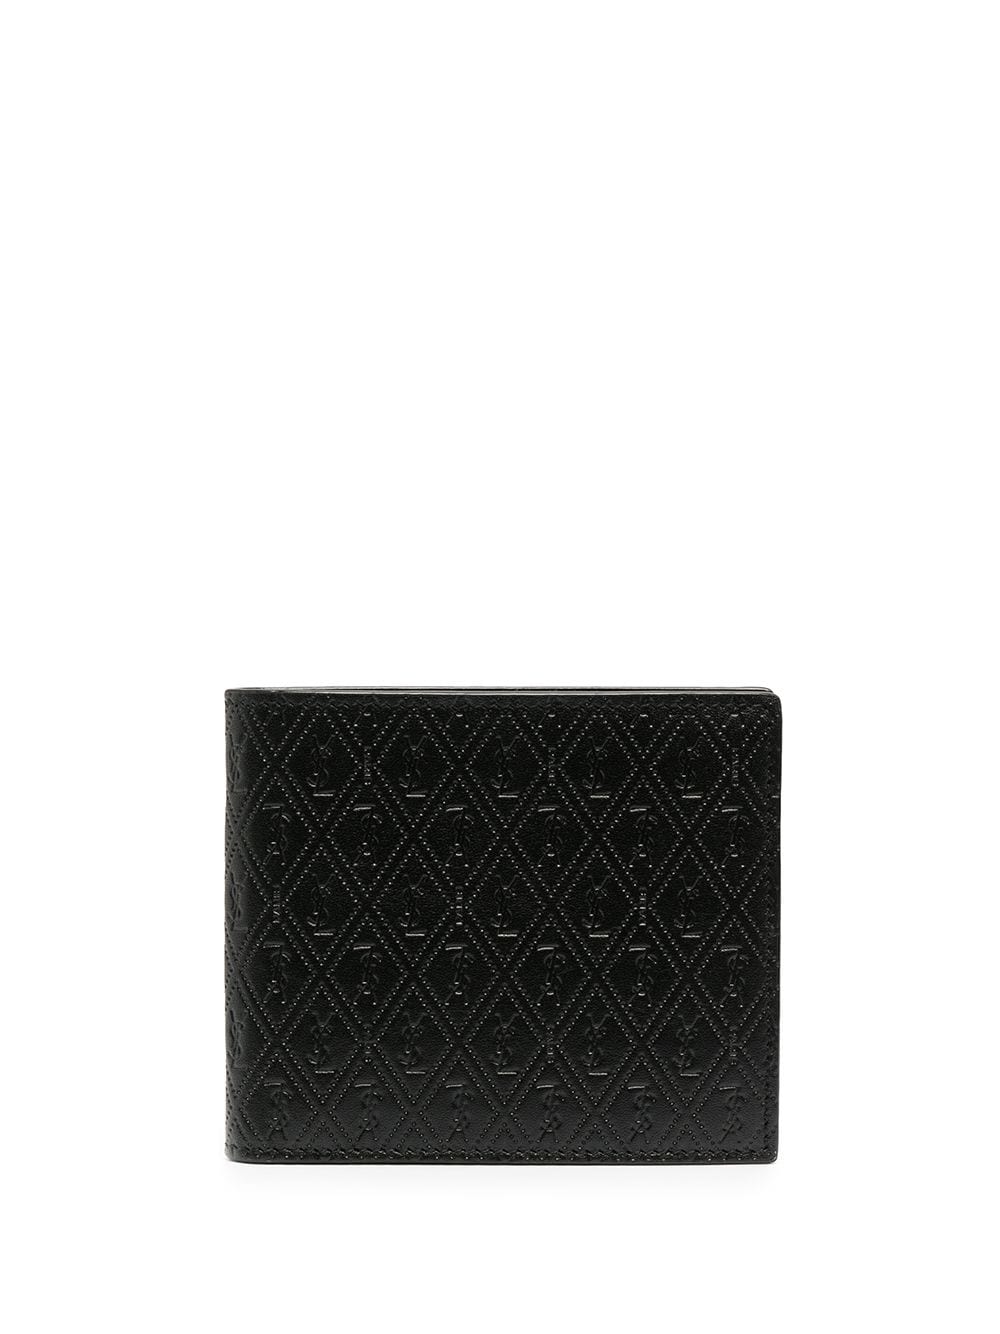 Saint Laurent perforated leather wallet - Black von Saint Laurent